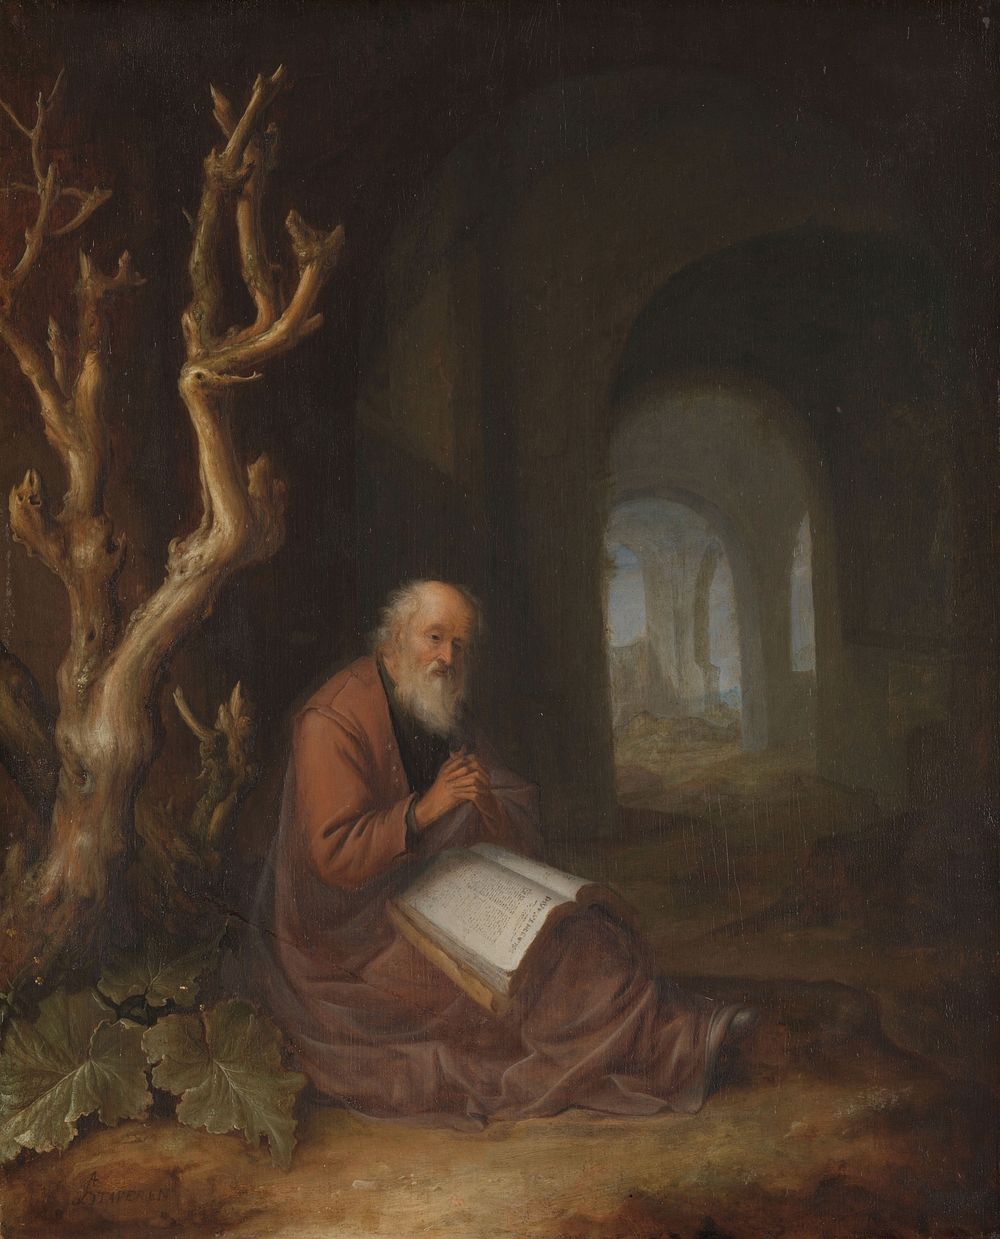 A Hermit Praying in a Ruin (1650 - 1668) by Jan Adriaensz van Staveren